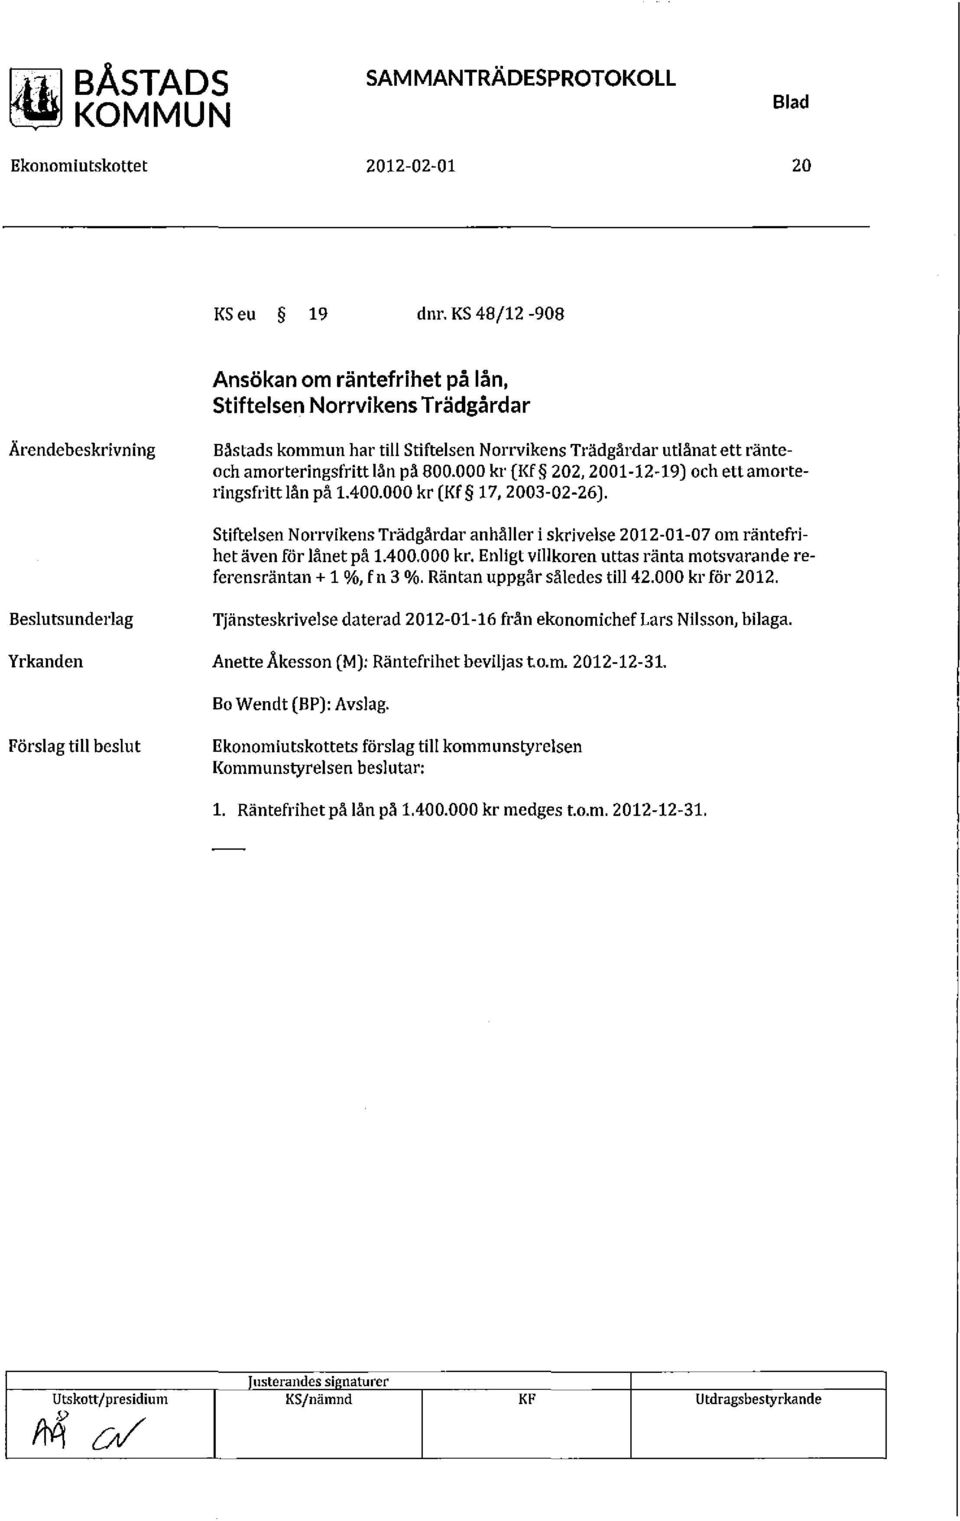 000 kr (Kf 202, 2001-12-19) och ett amorteringsfritt lån på 1.400.000 kr (Kf 17,2003-02-26). Stiftelsen Norrvikens Trädgårdar anhåller i skrivelse 2012-01-07 om räntefrihet även för lånet på 1.400.000 kr. Enligt villkoren uttas ränta motsvarande referensräntan + 1 %, fn 3 %.